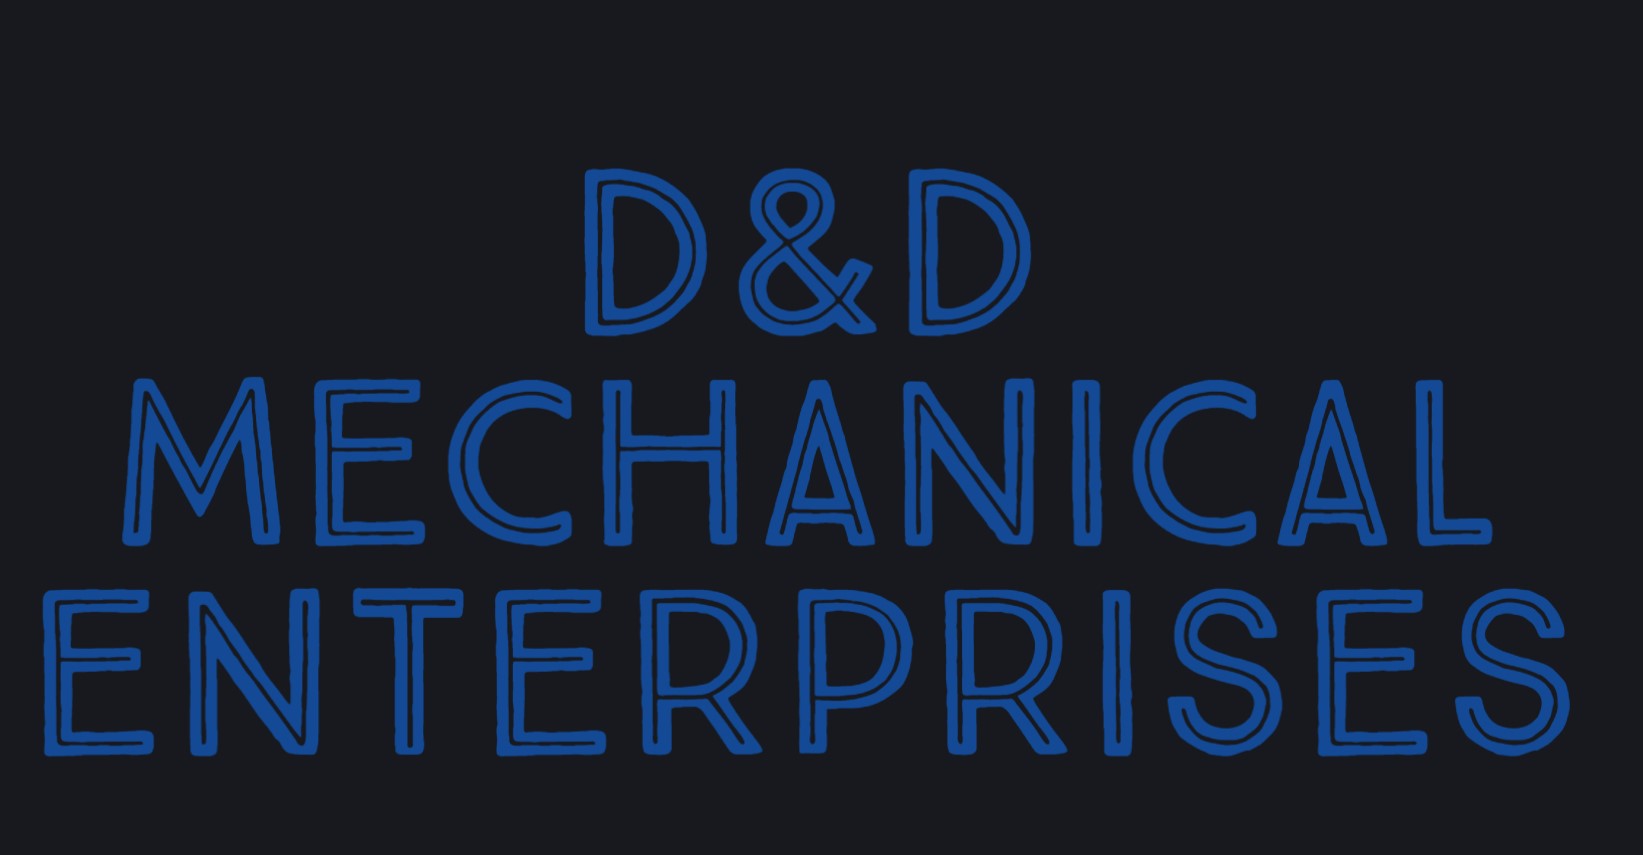 D&D Mechanical Enterprises